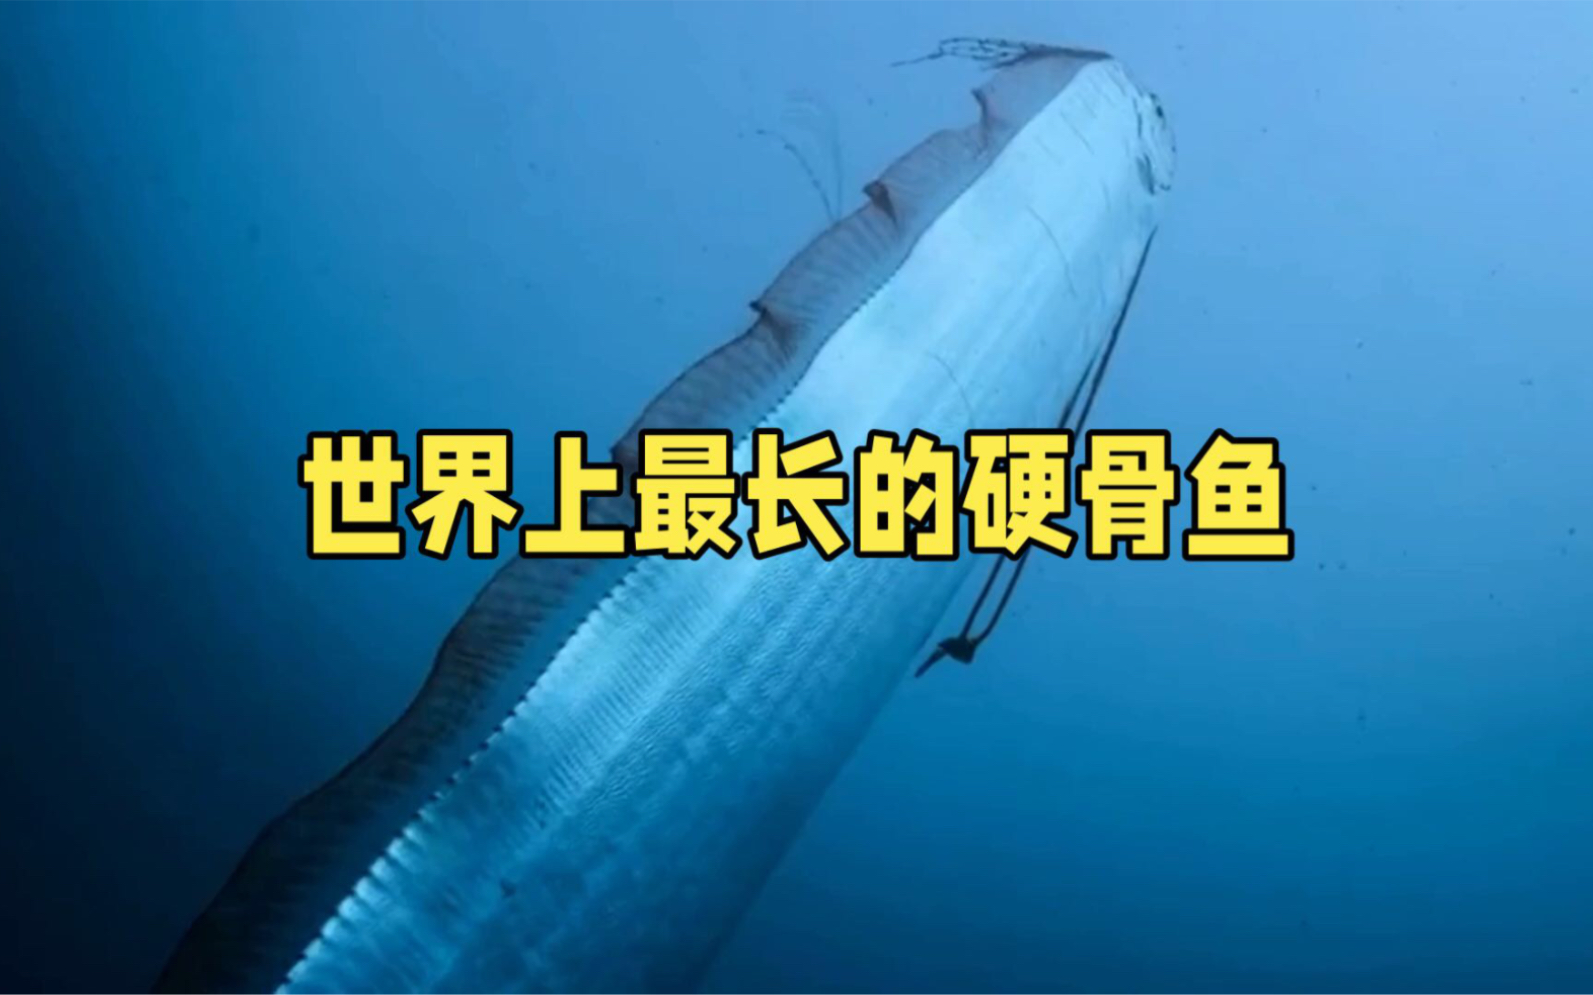 皇带鱼:海洋中的神秘长带,灾难与奇迹的象征